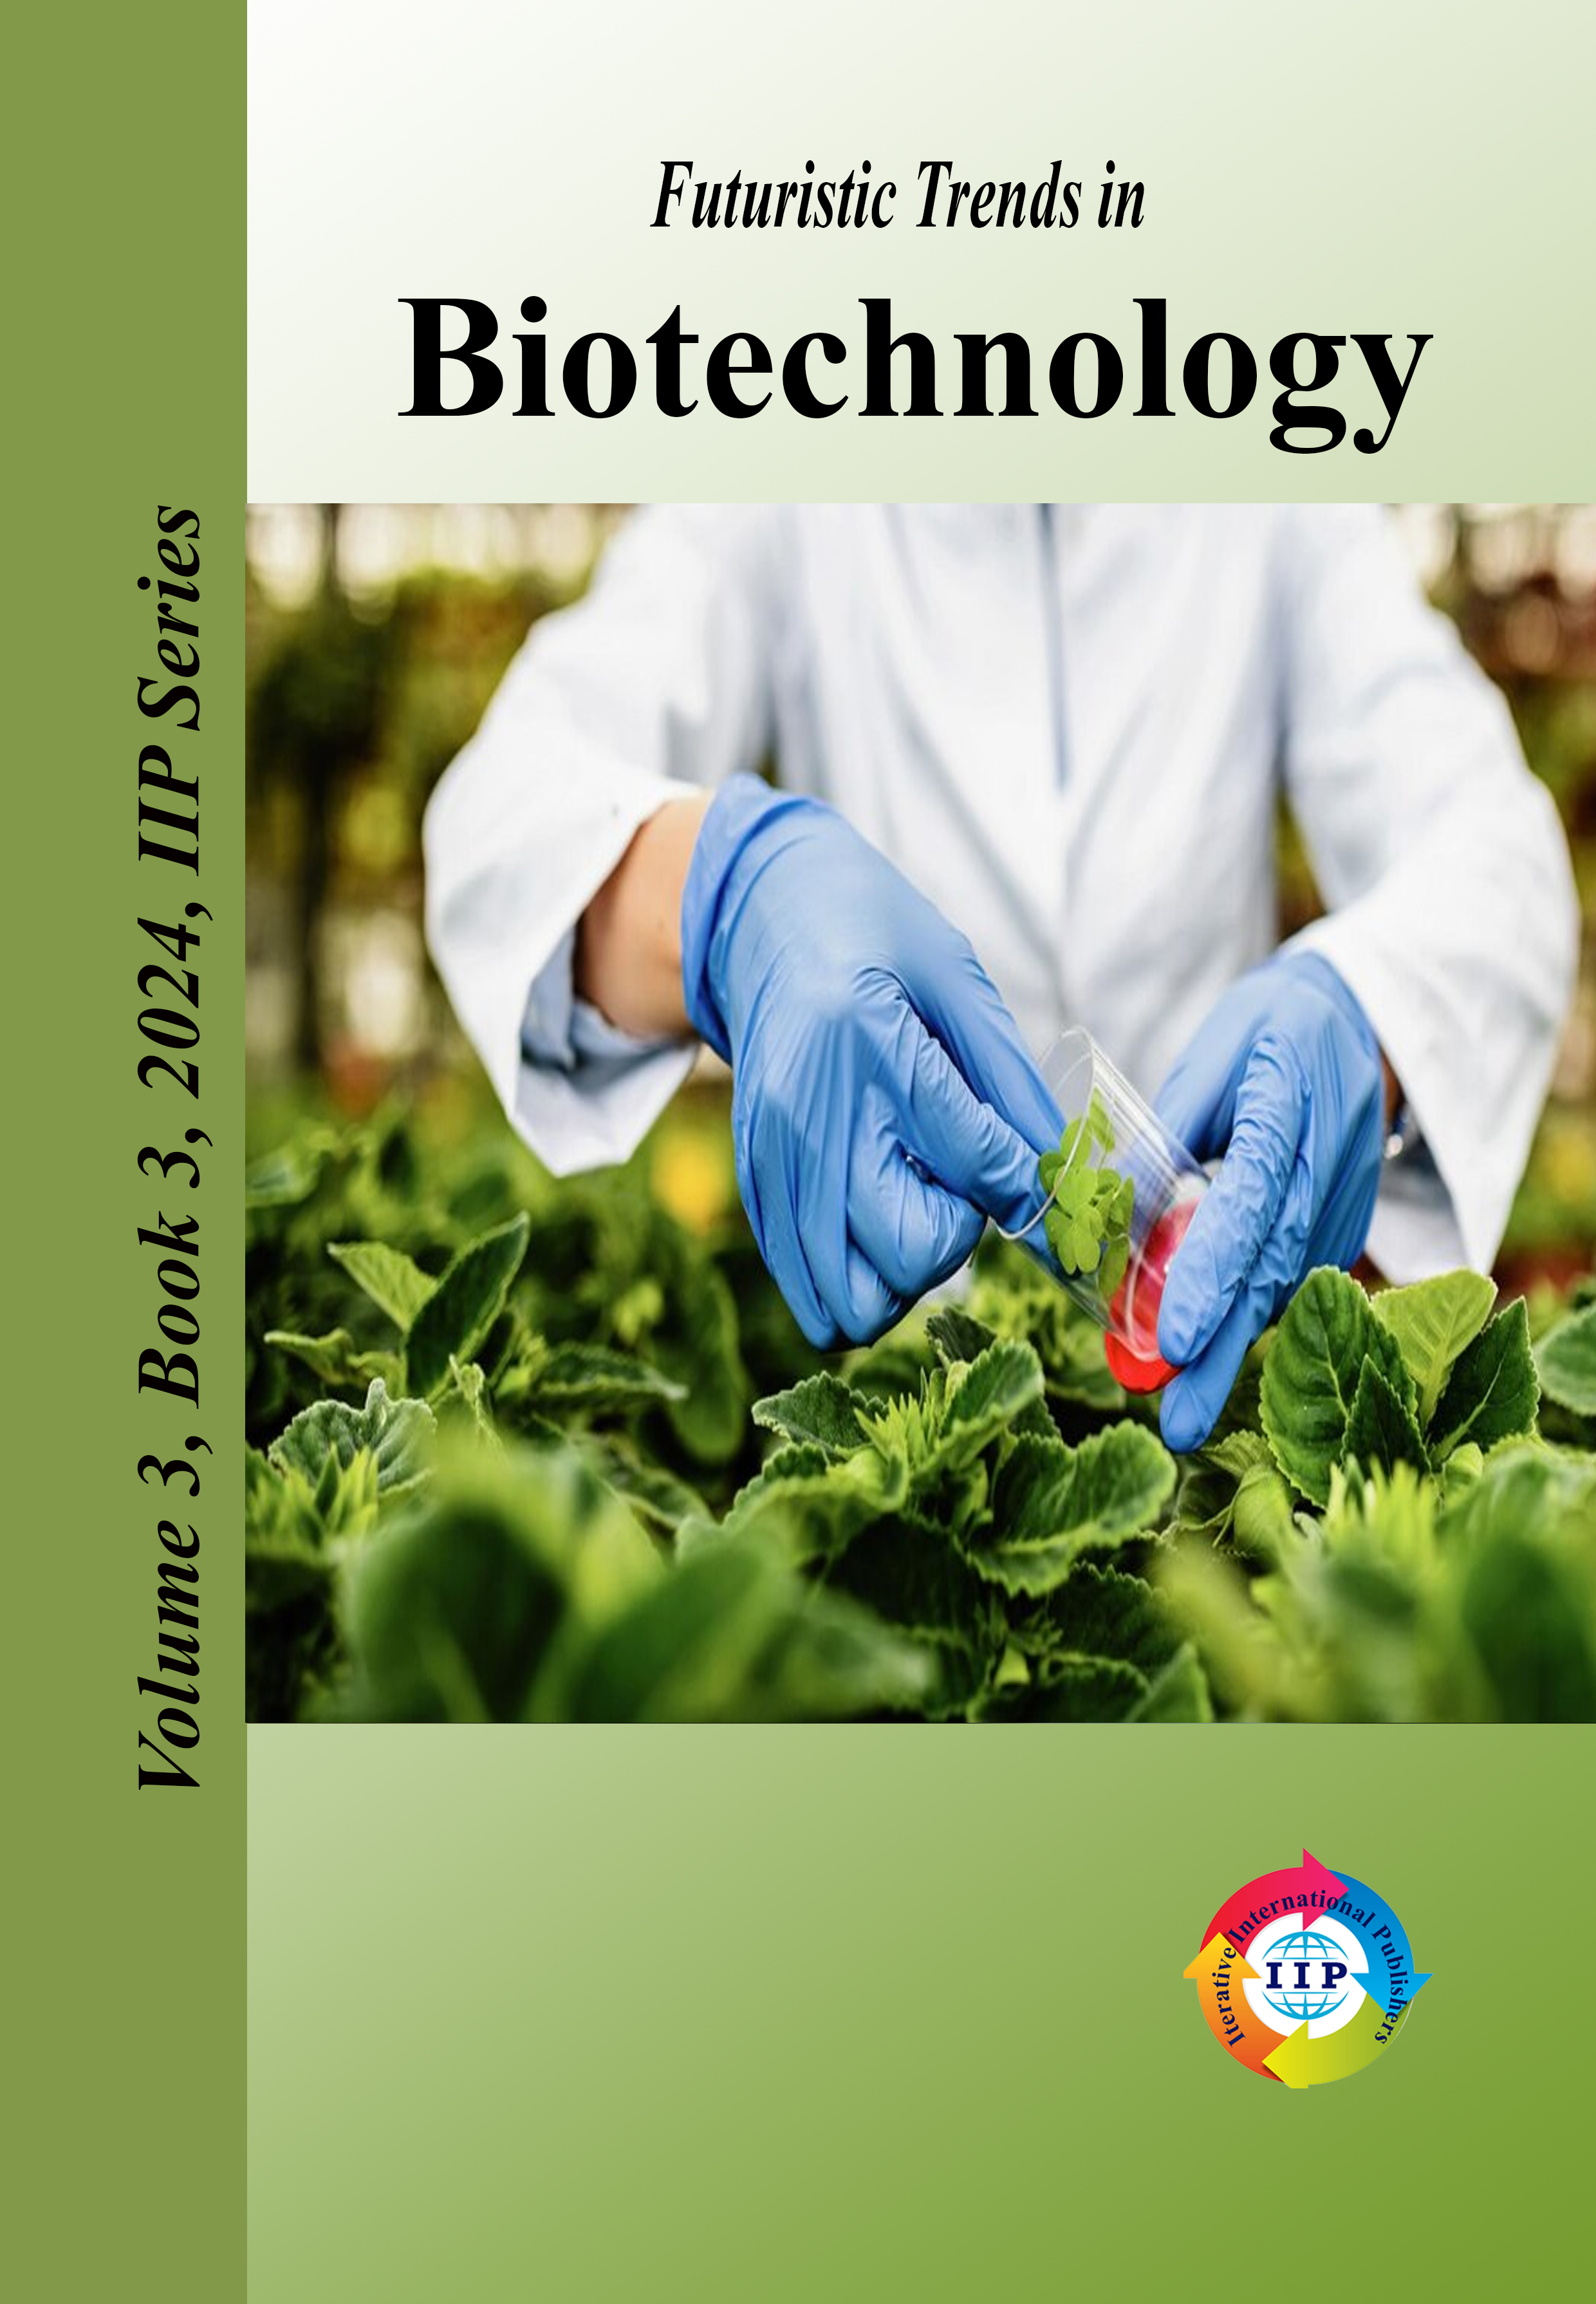 Futuristic Trends in Biotechnology Volume 3 Book 3